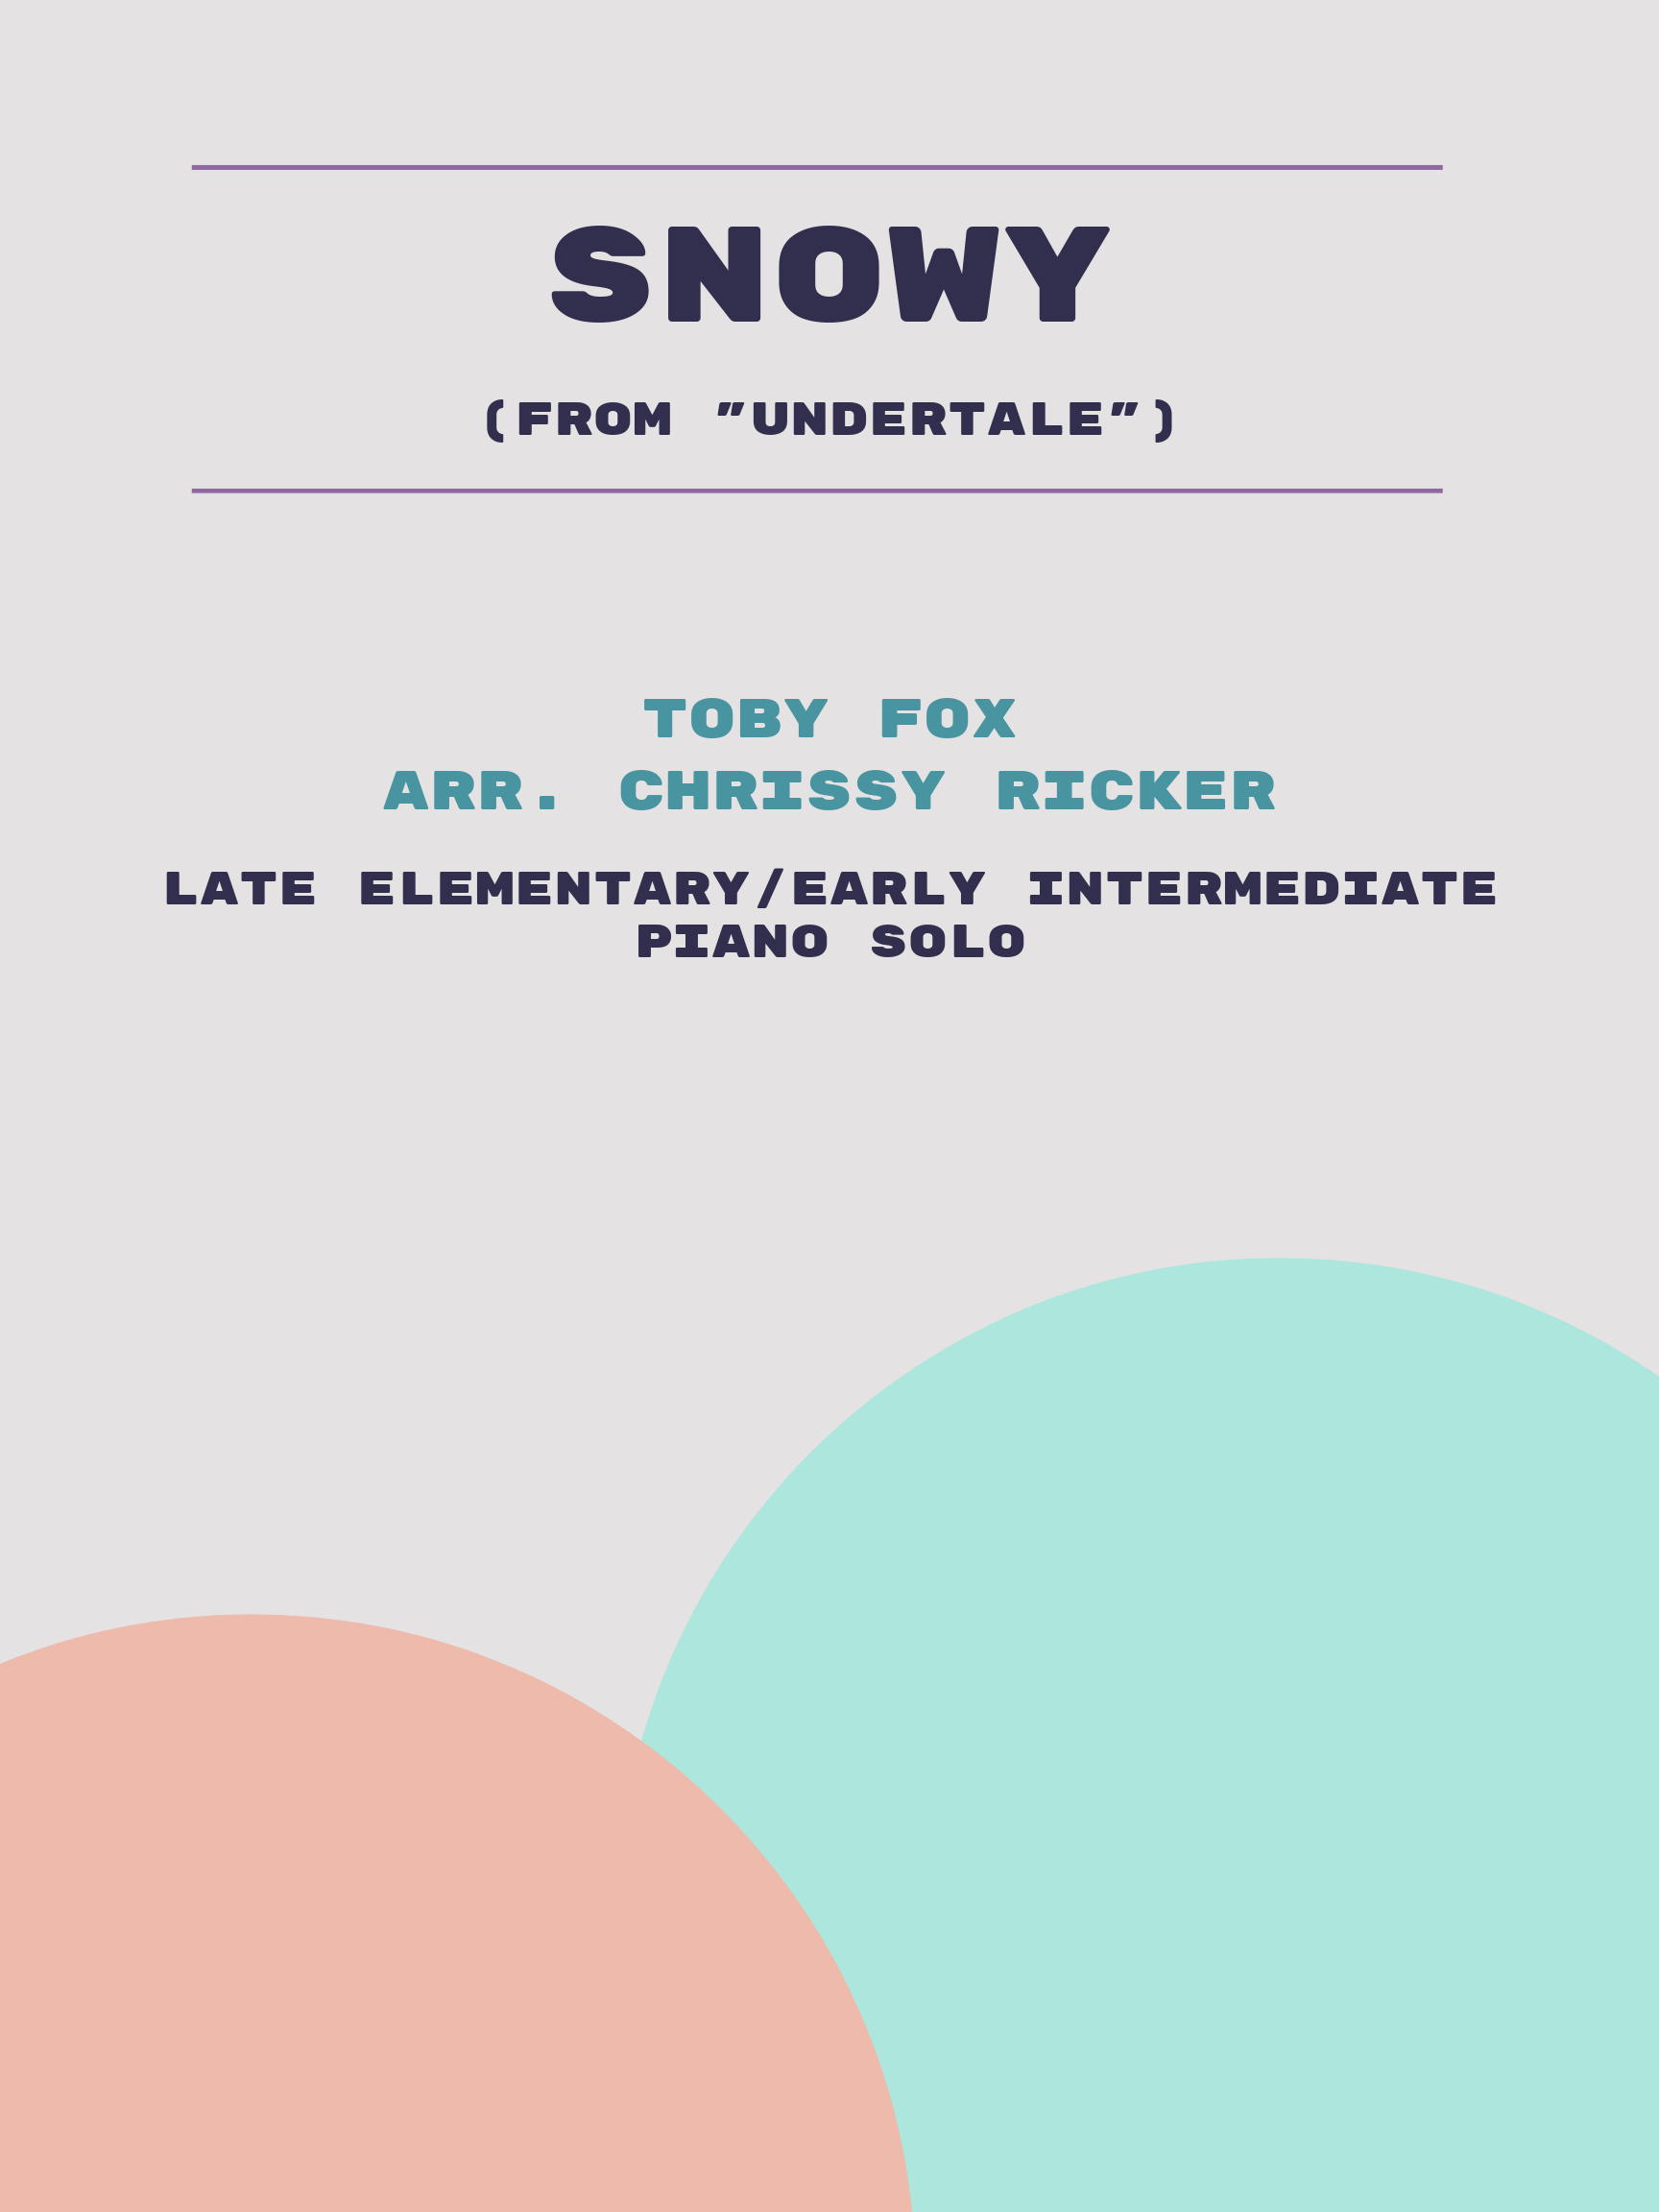 Snowy by Toby Fox